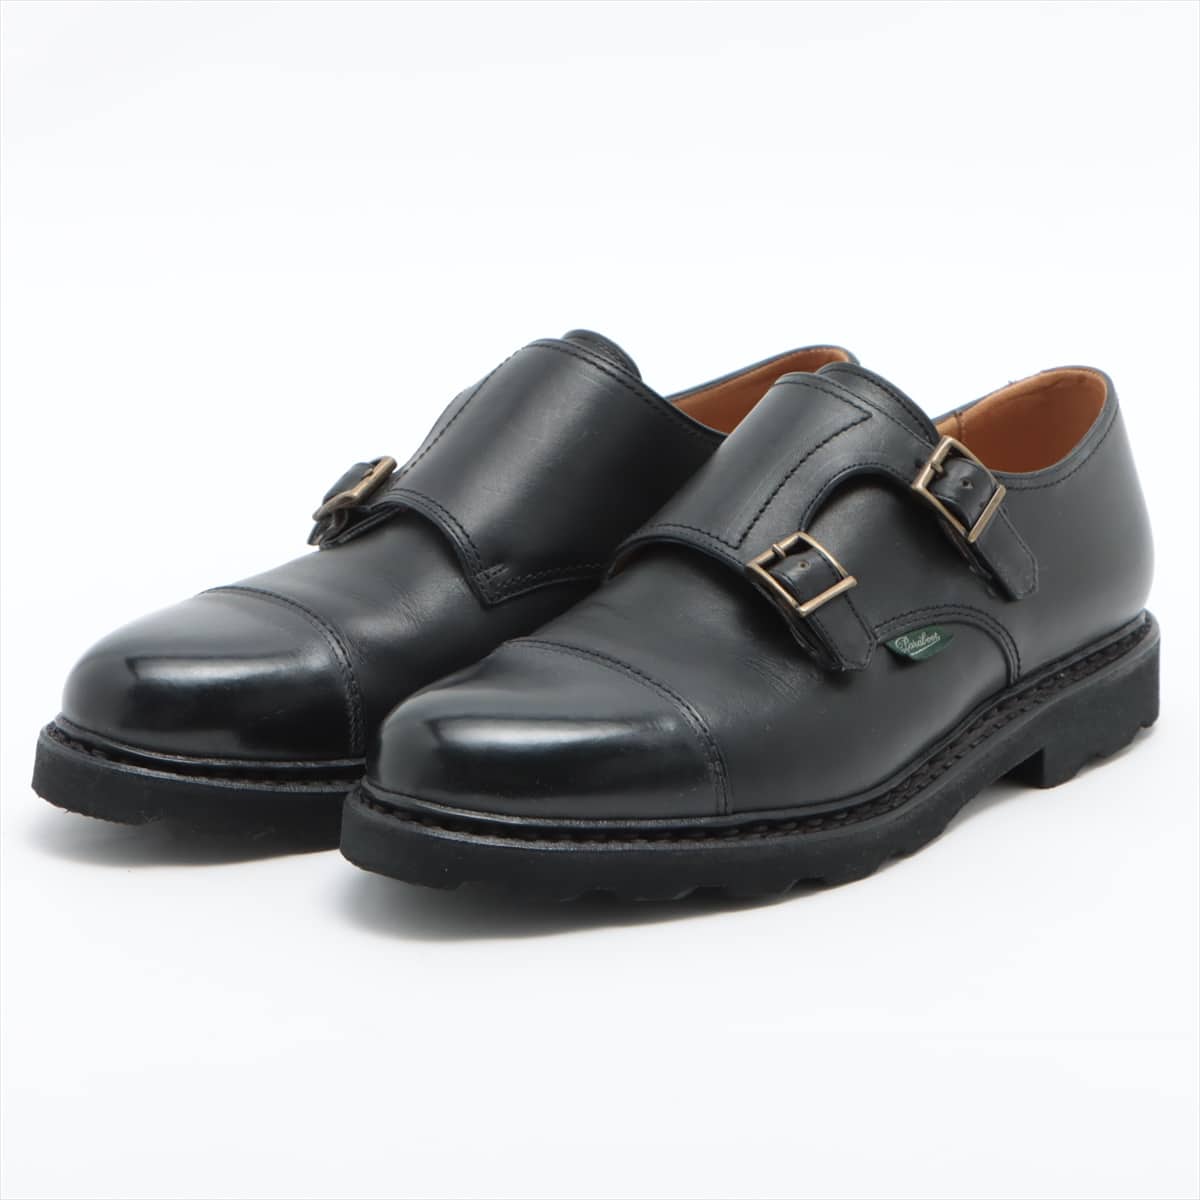 Paraboot William Leather Shoes 7 1/2 Men's Black Double monk